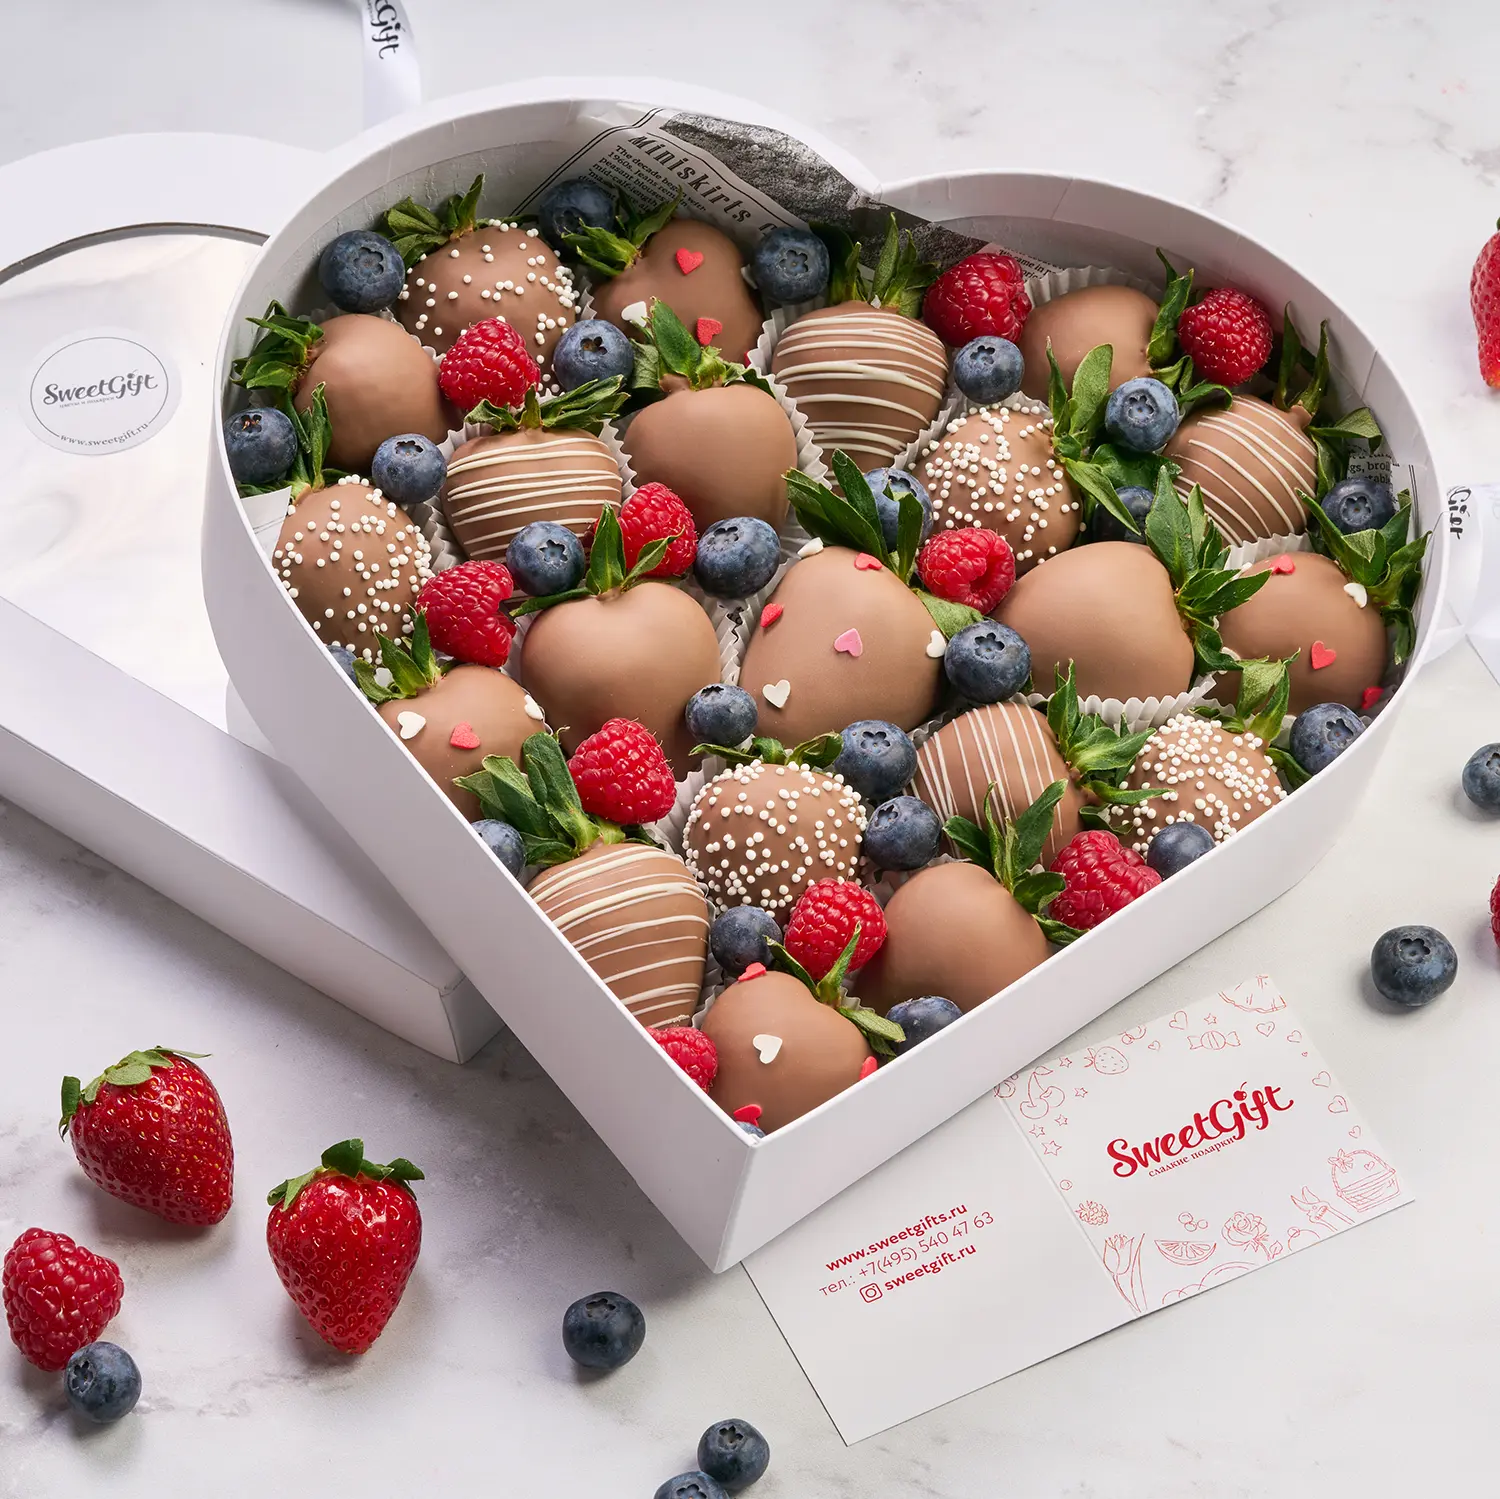 Подарочный набор из ягод в бельгийском шоколаде "Сердце"5 100 руб.